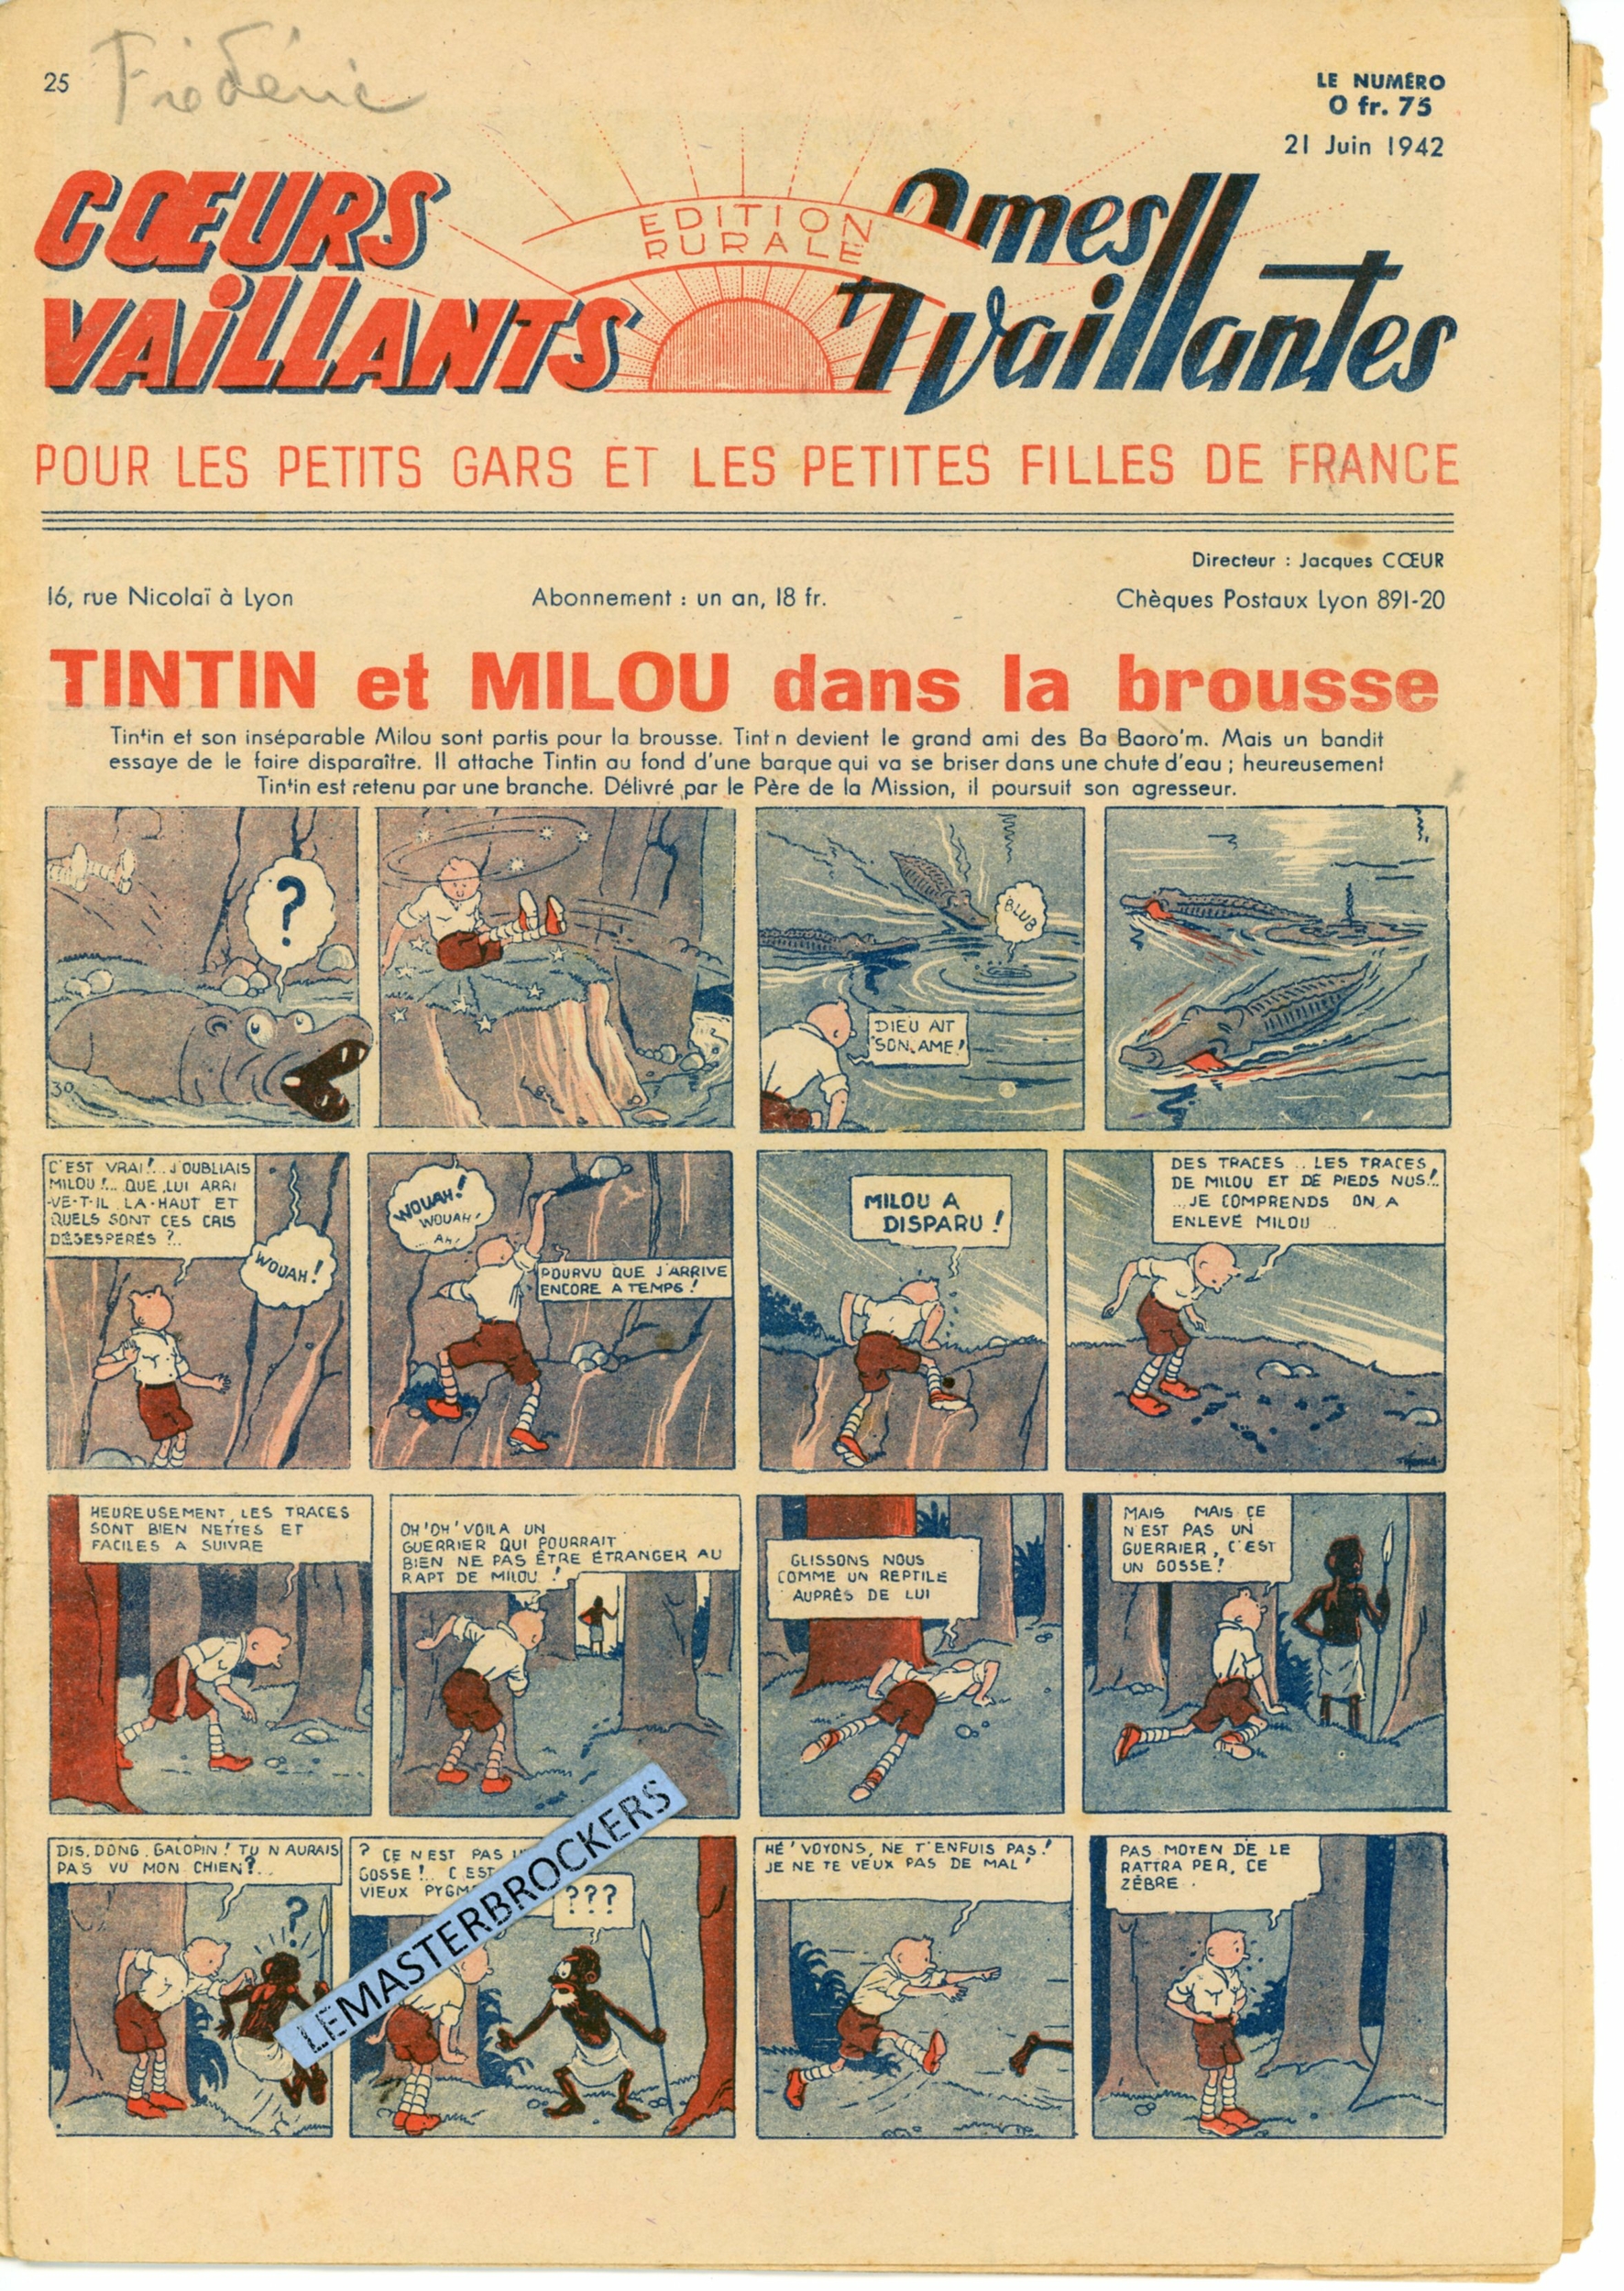 TINTIN ET MILOU DANS LA BROUSSE - COEURS VAILLANTS N° 25 - SUPPLÉMENT BIMENSUEL 21 JUIN 1942